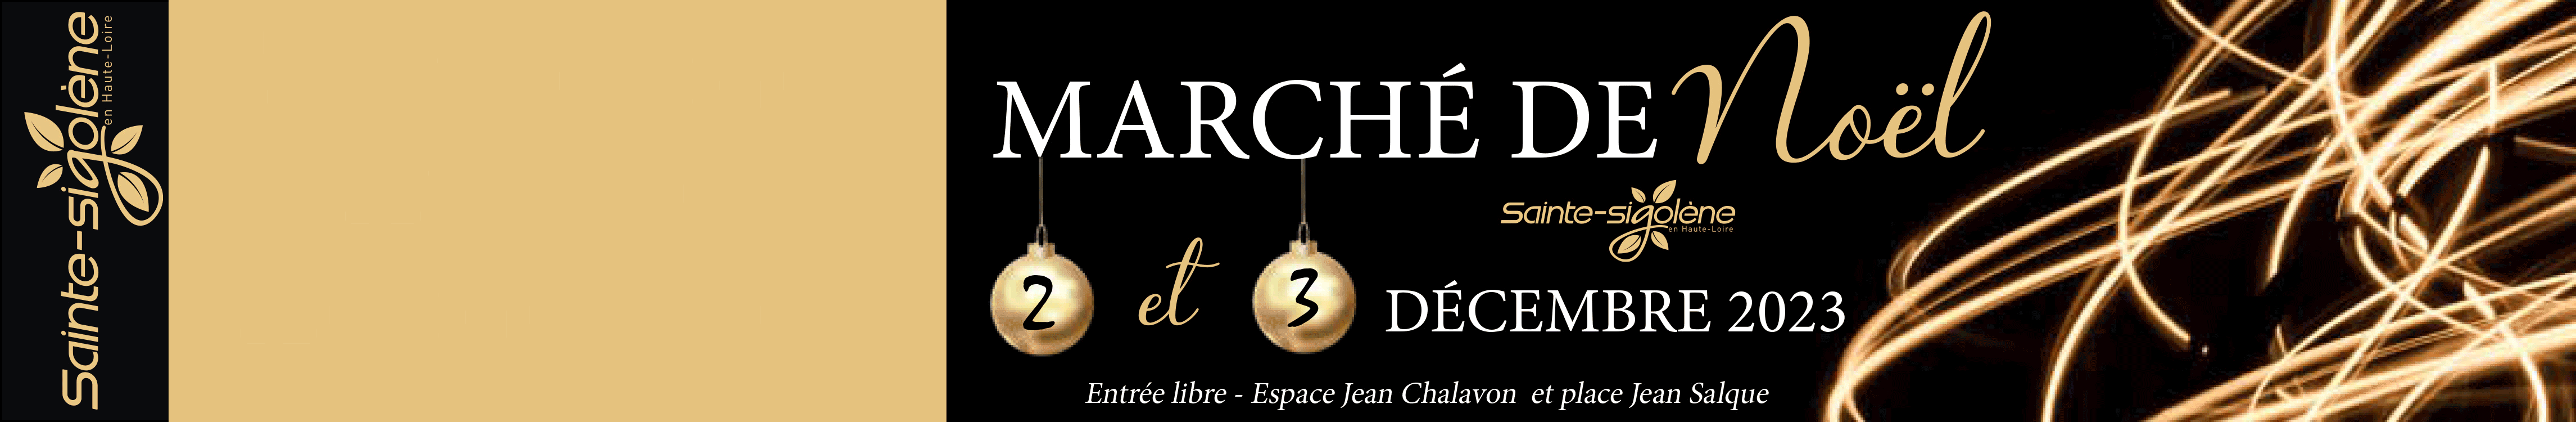 Sainte-Sigolène marché Noël novembre 2023